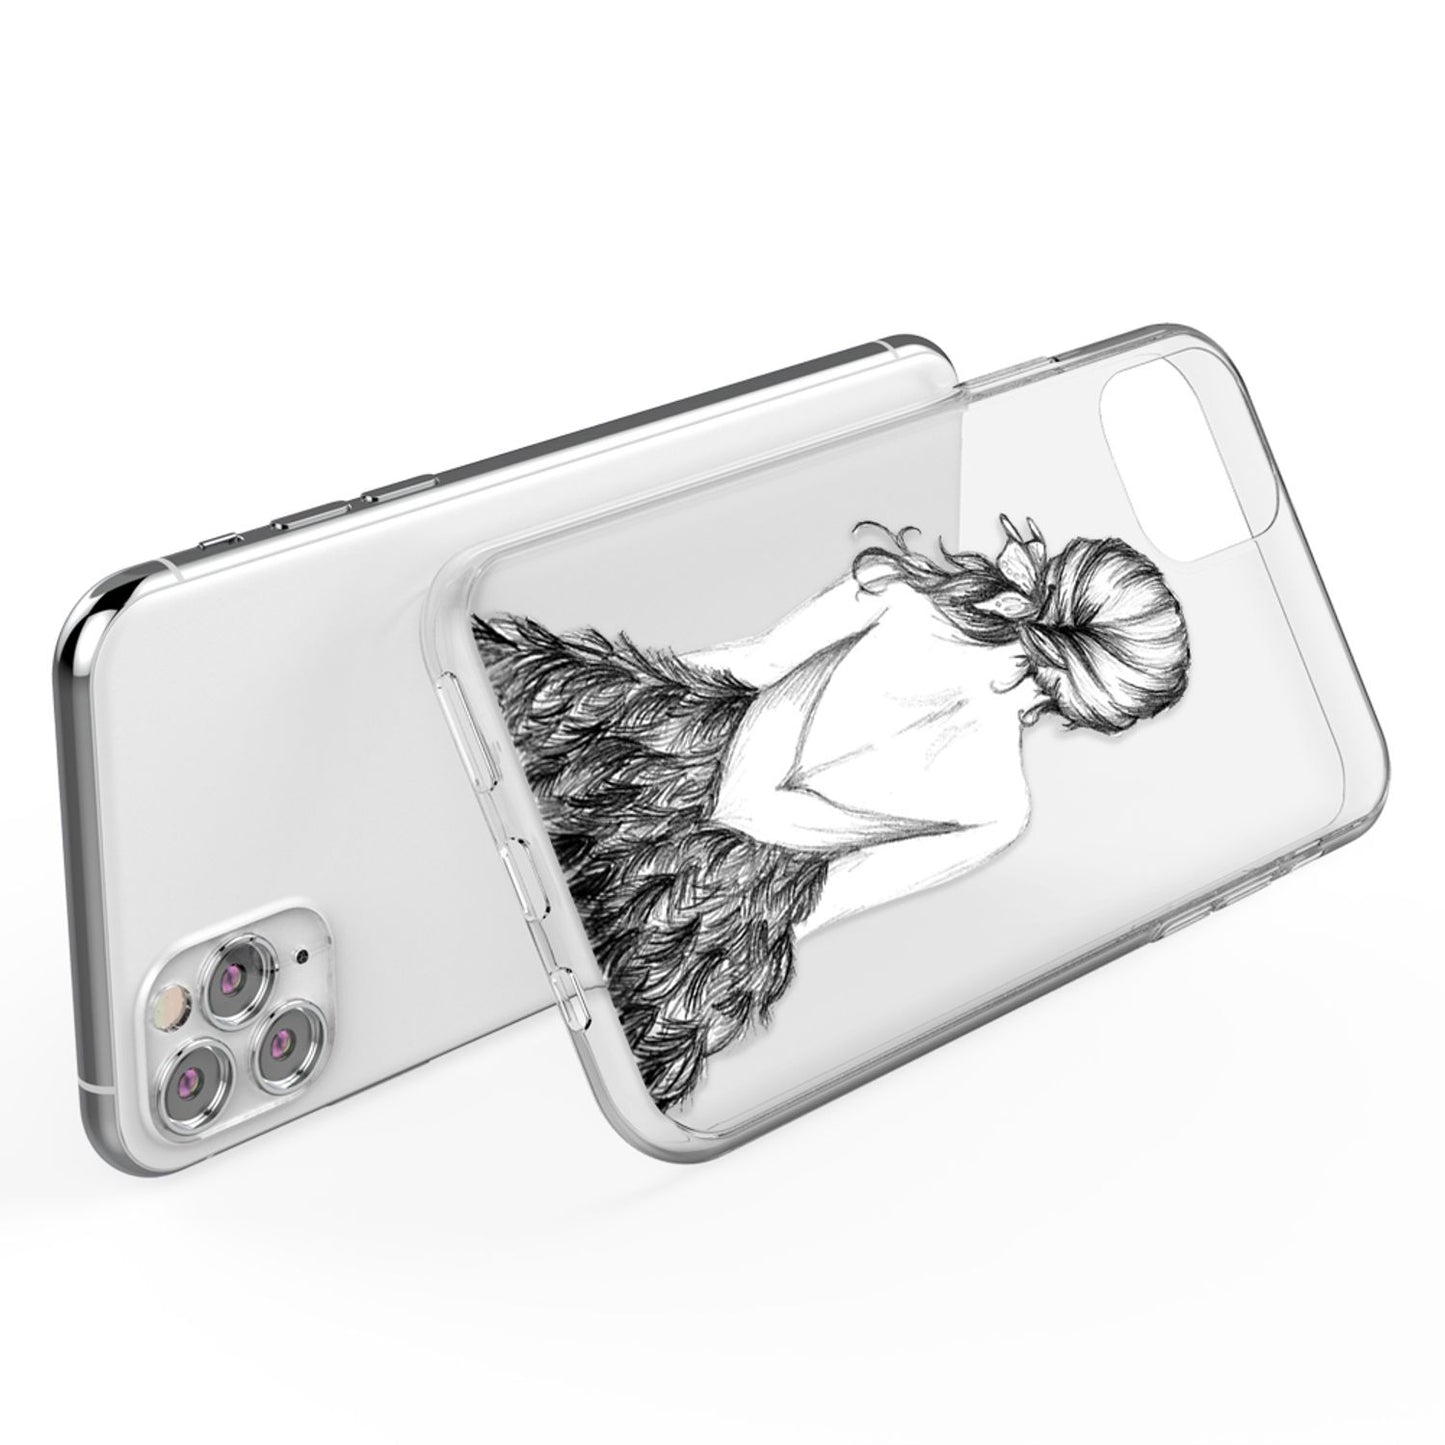 NALIA Motiv Handyhülle für iPhone 11 Pro Max, Schutz Case Cover Tasche Bumper Etui